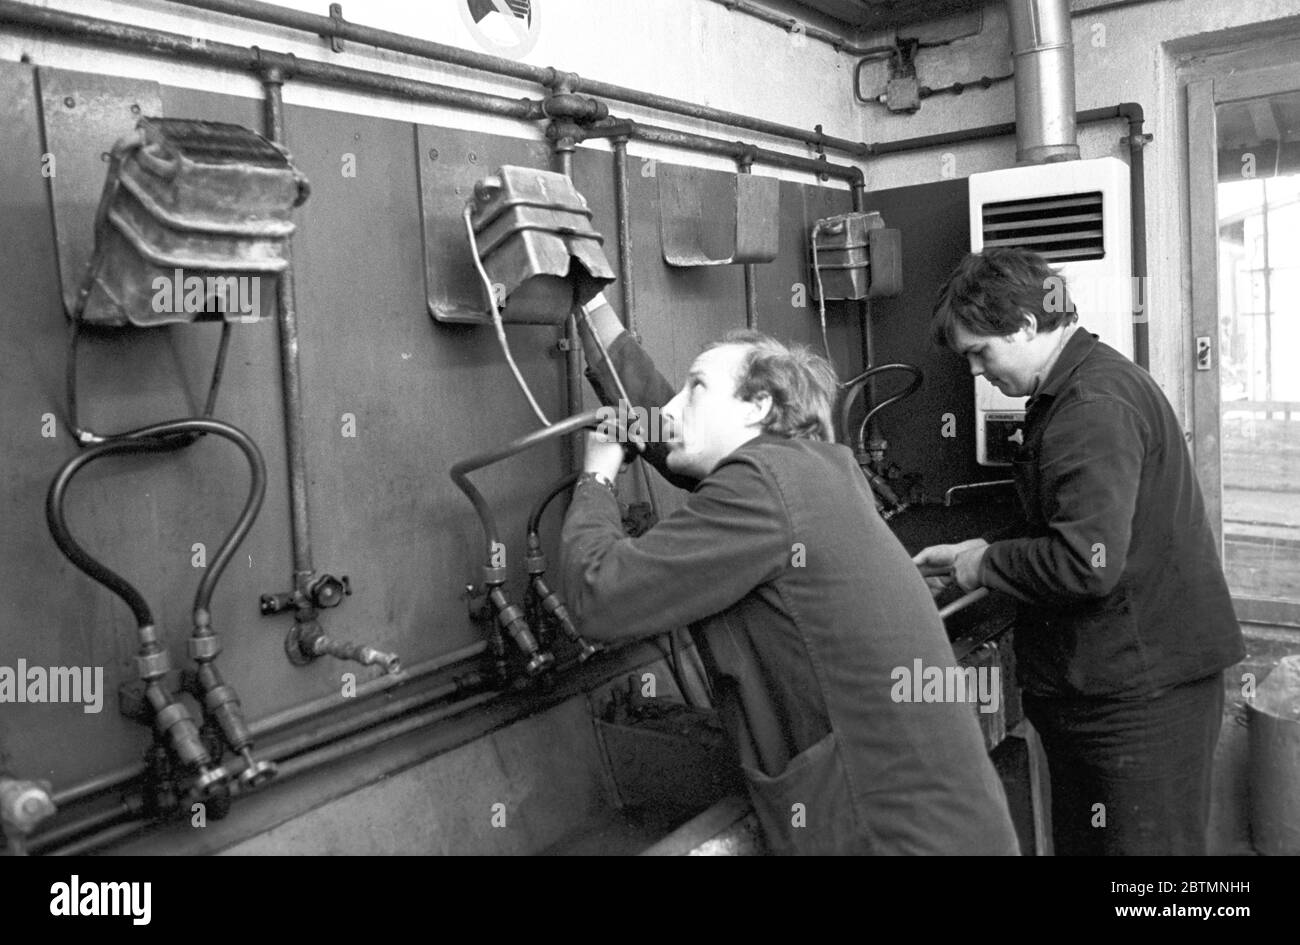 30 novembre 1984, Saxe, Delitzsch: Les chaudières à eau des chauffe-eau sont réparées par des travailleurs qualifiés au PGH Ausbau Delitzsch au milieu des années 1980. De l'eau chaude a été produite dans de nombreux appartements utilisant ces dispositifs. Date exacte de l'enregistrement inconnue. Photo: Volkmar Heinz/dpa-Zentralbild/ZB Banque D'Images